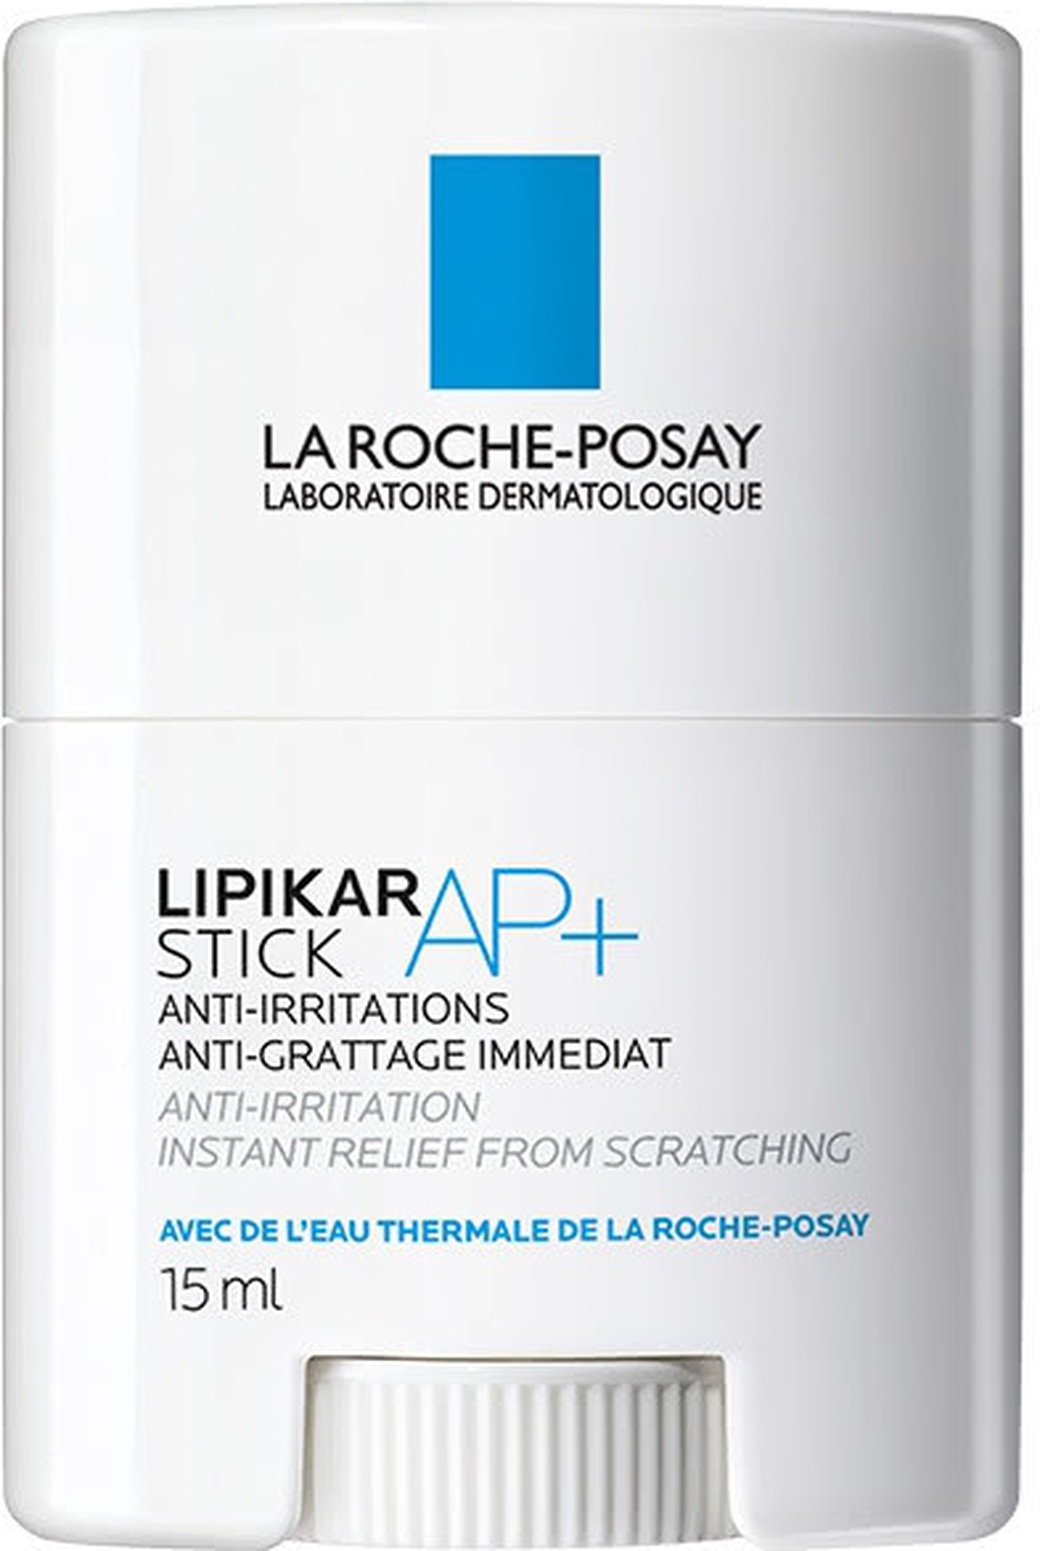 La Roche-Posay Lipikar стик AP+ эко короб 15 мл фото